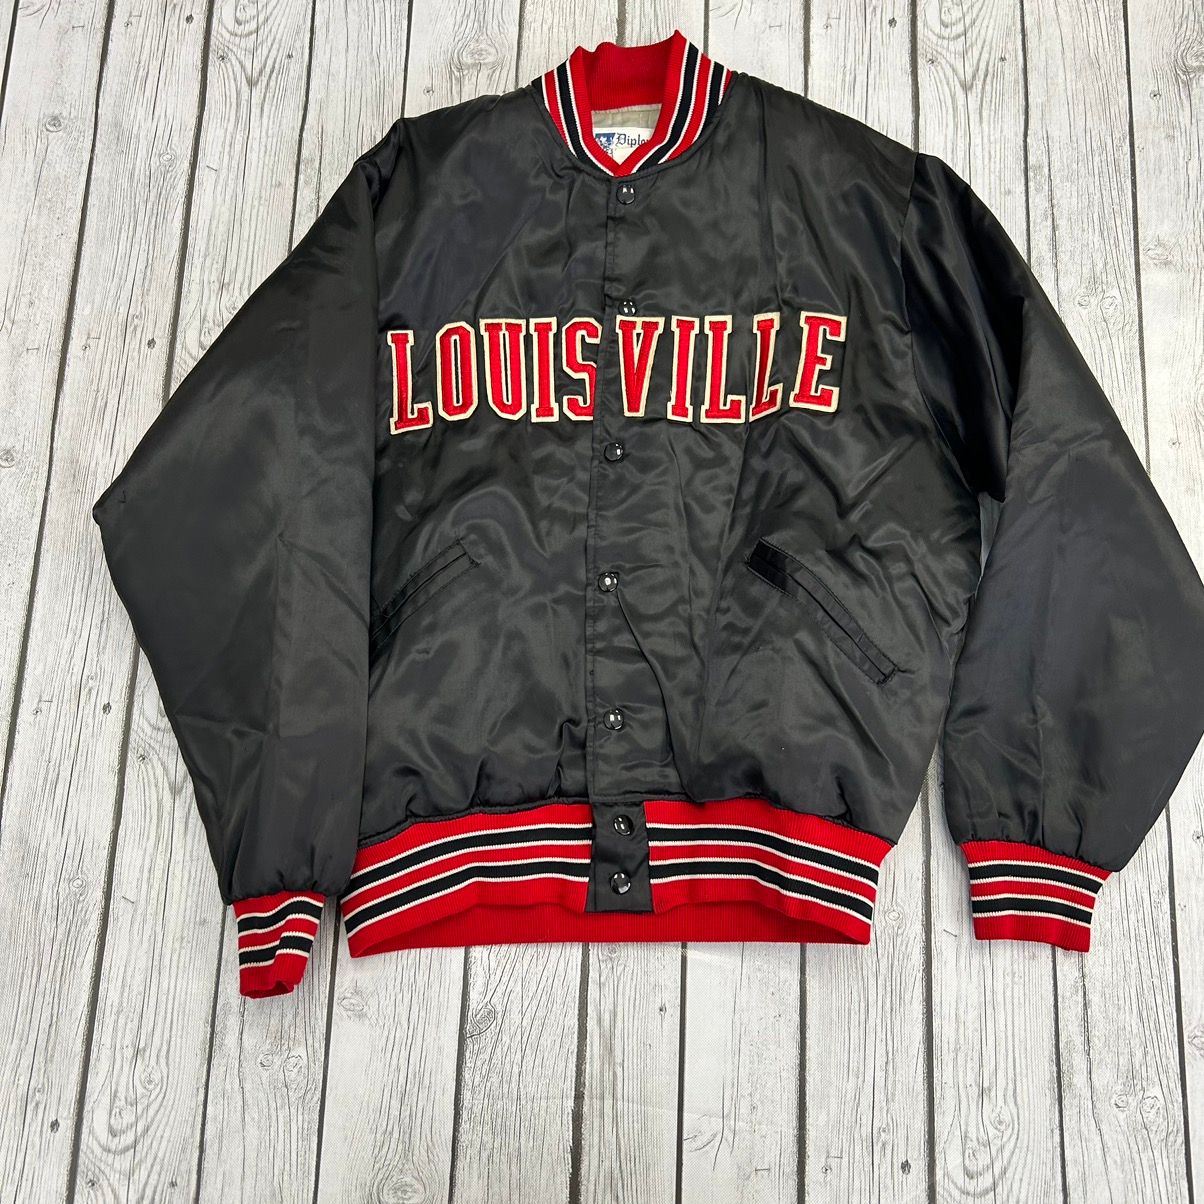 Vintage University of Louisville Cardinals 90's Satin 